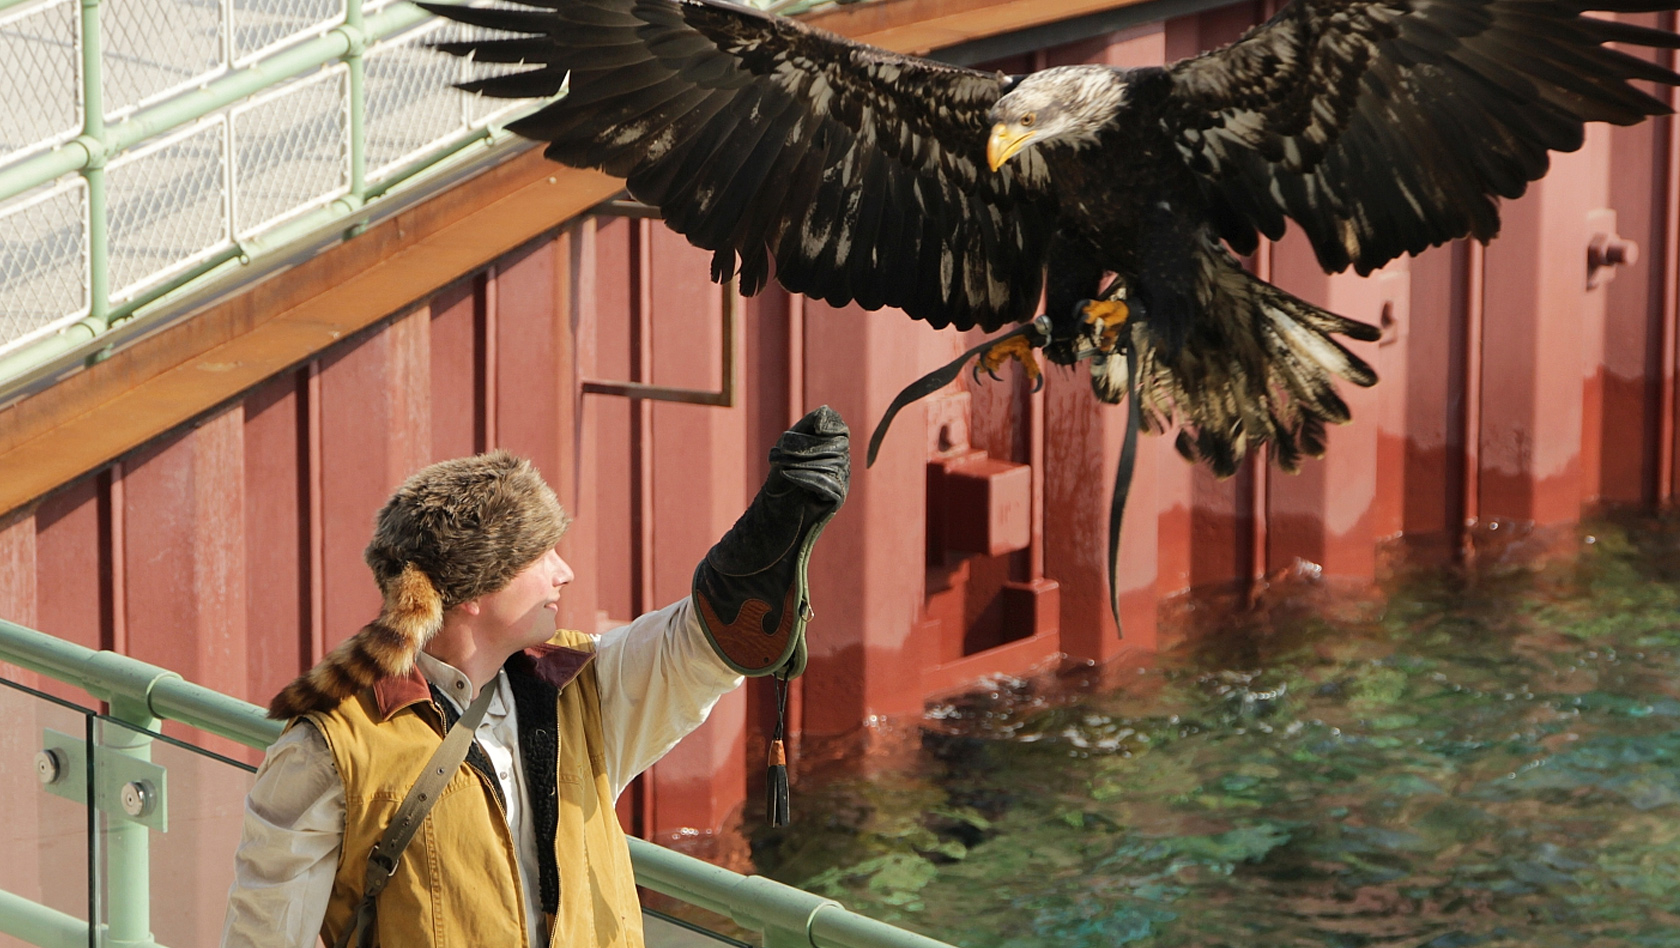 Adler in der Robbenshow des Erlebnis-Zoo Hannover